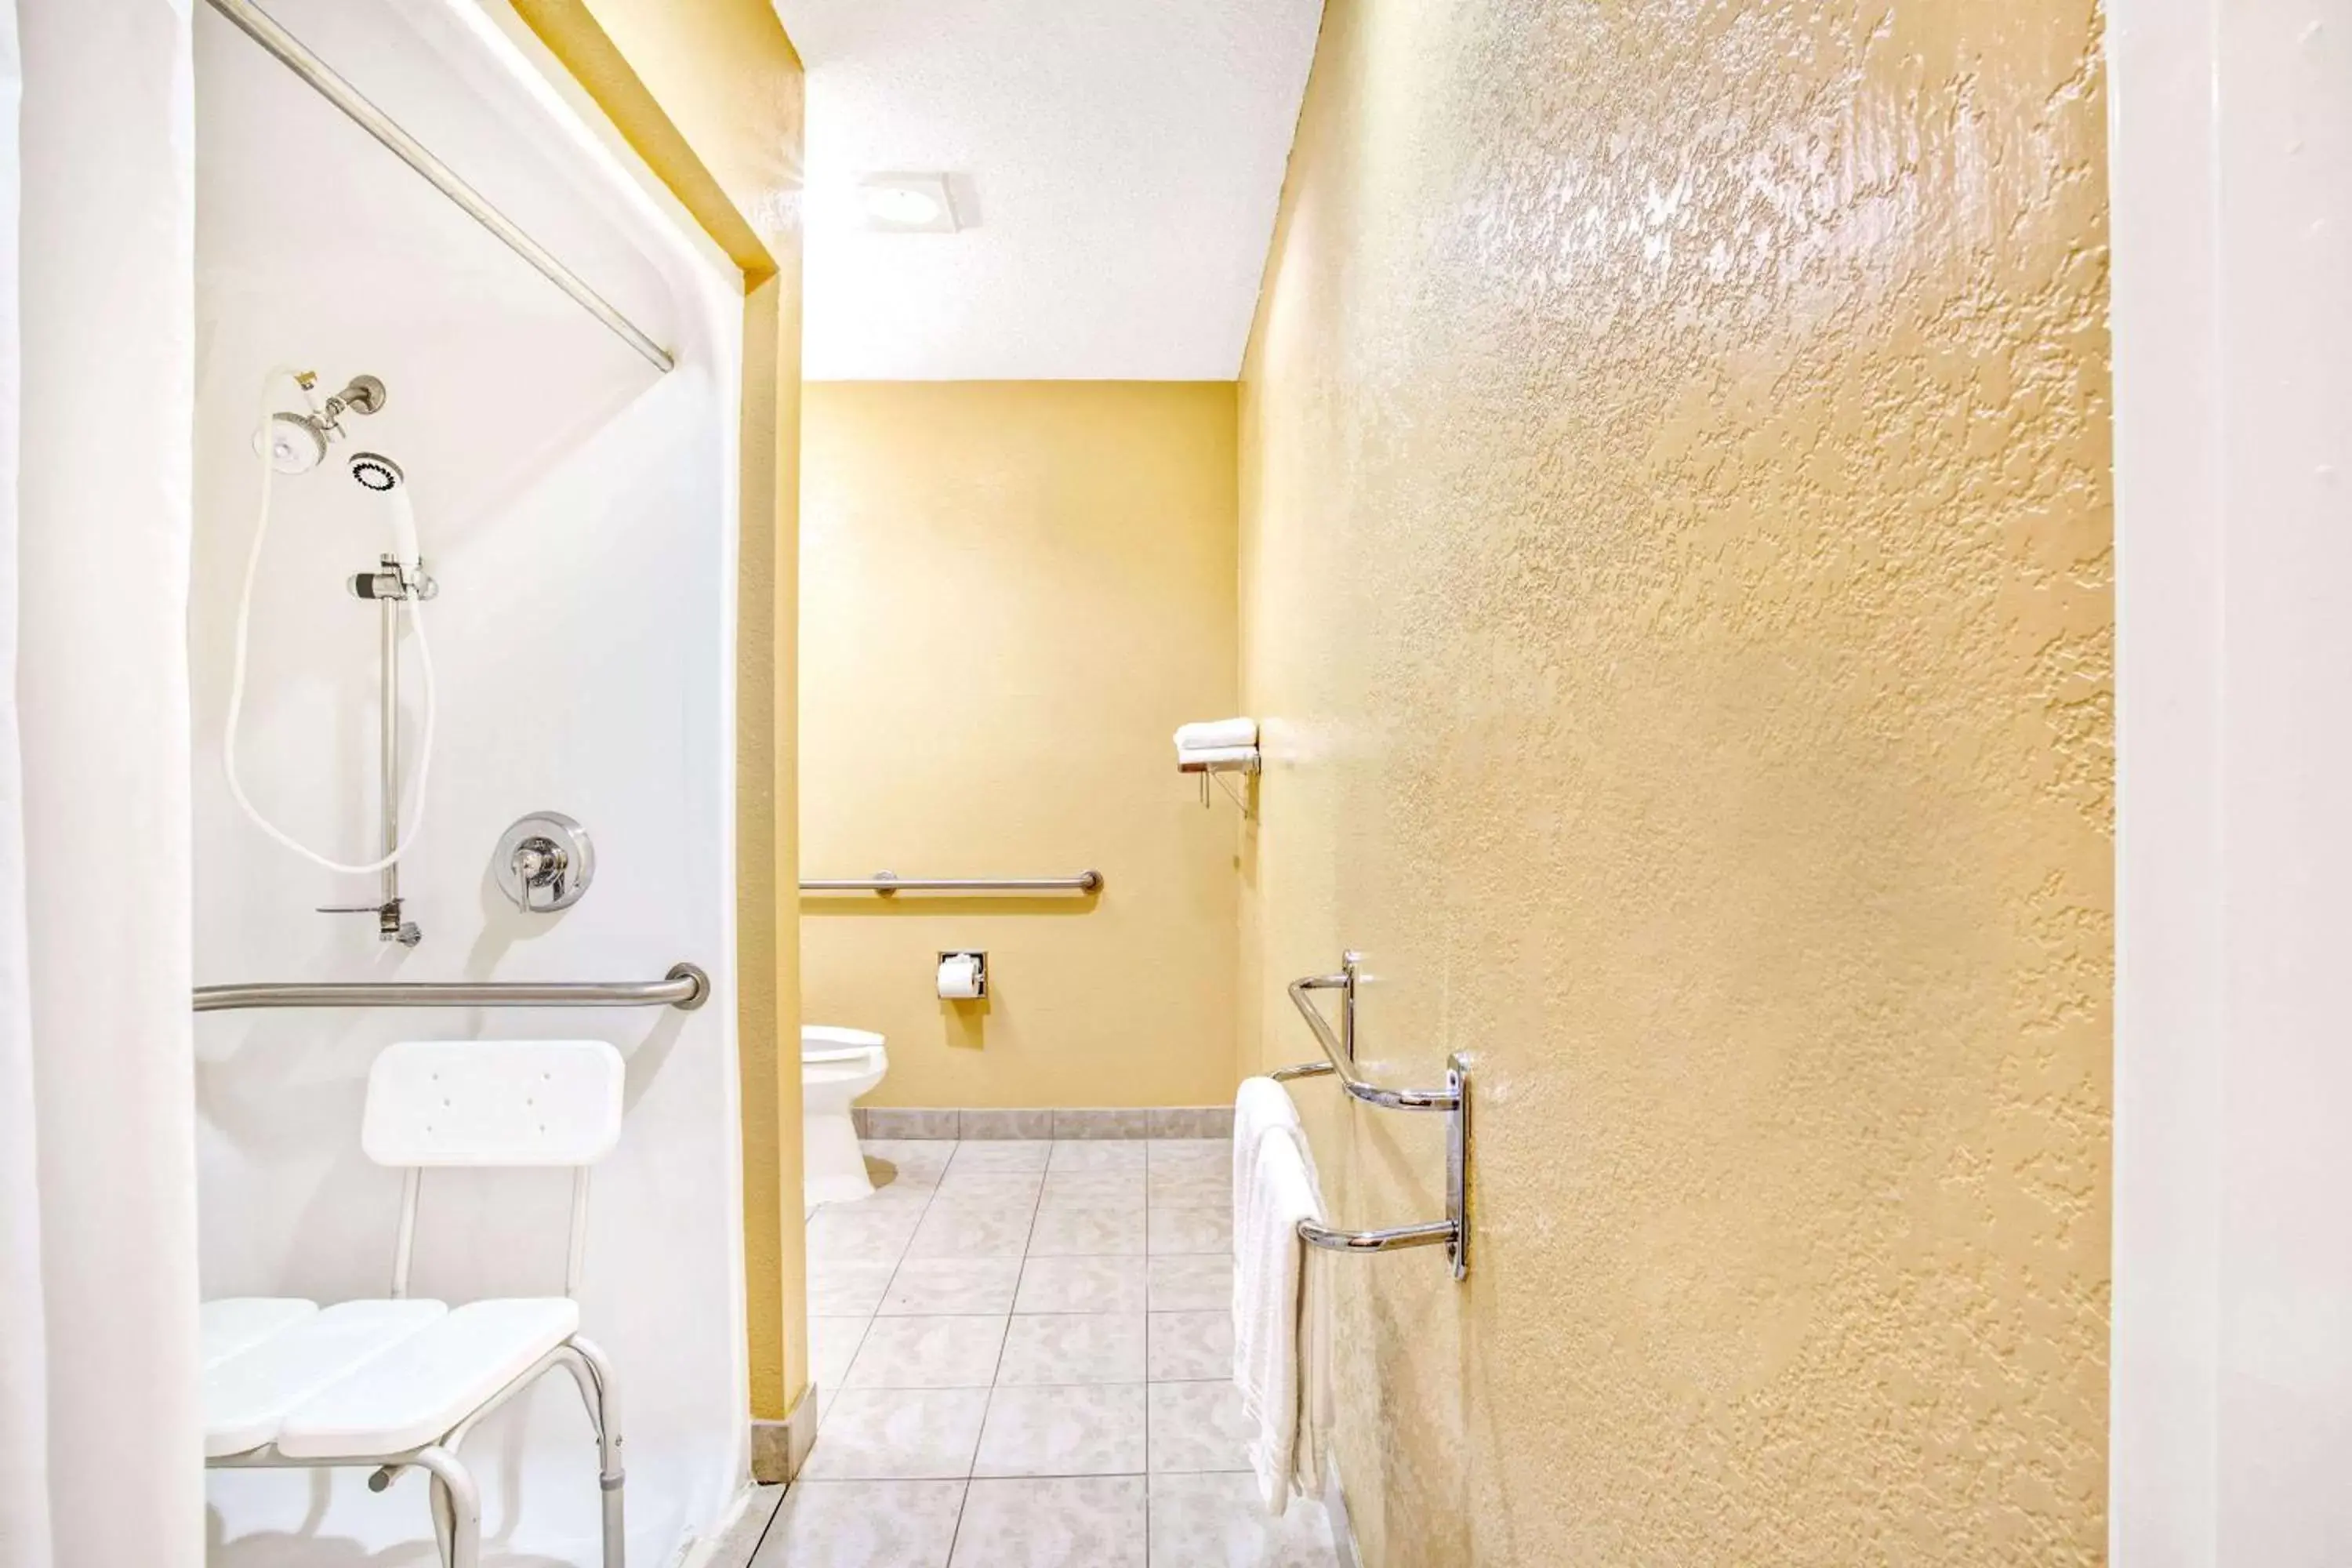 Bathroom in Microtel Inn & Suites Newport News